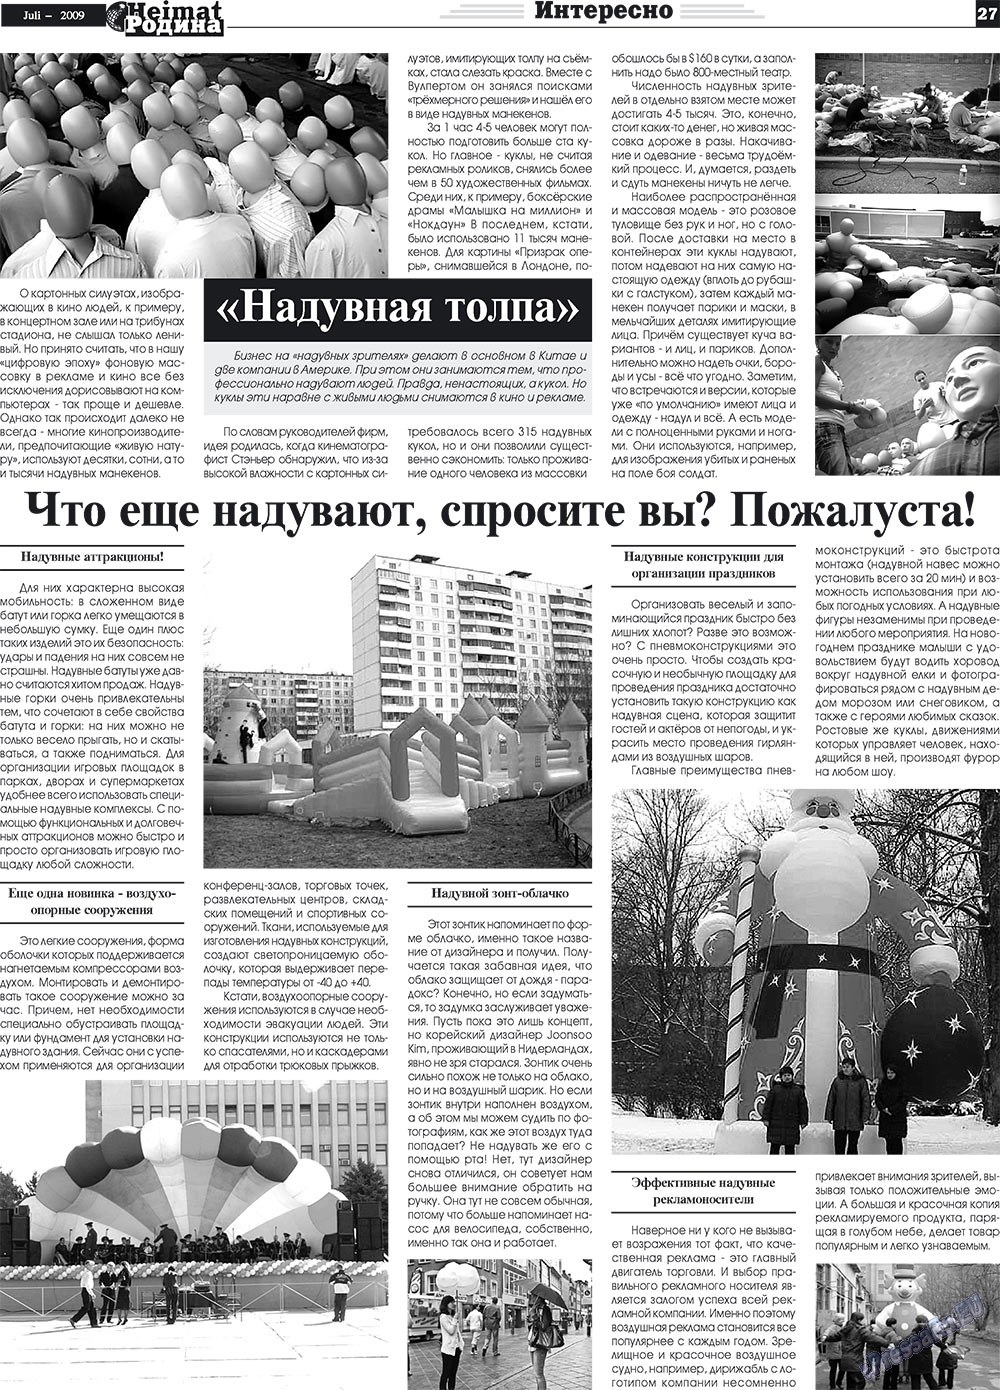 Heimat-Родина (газета). 2009 год, номер 7, стр. 27